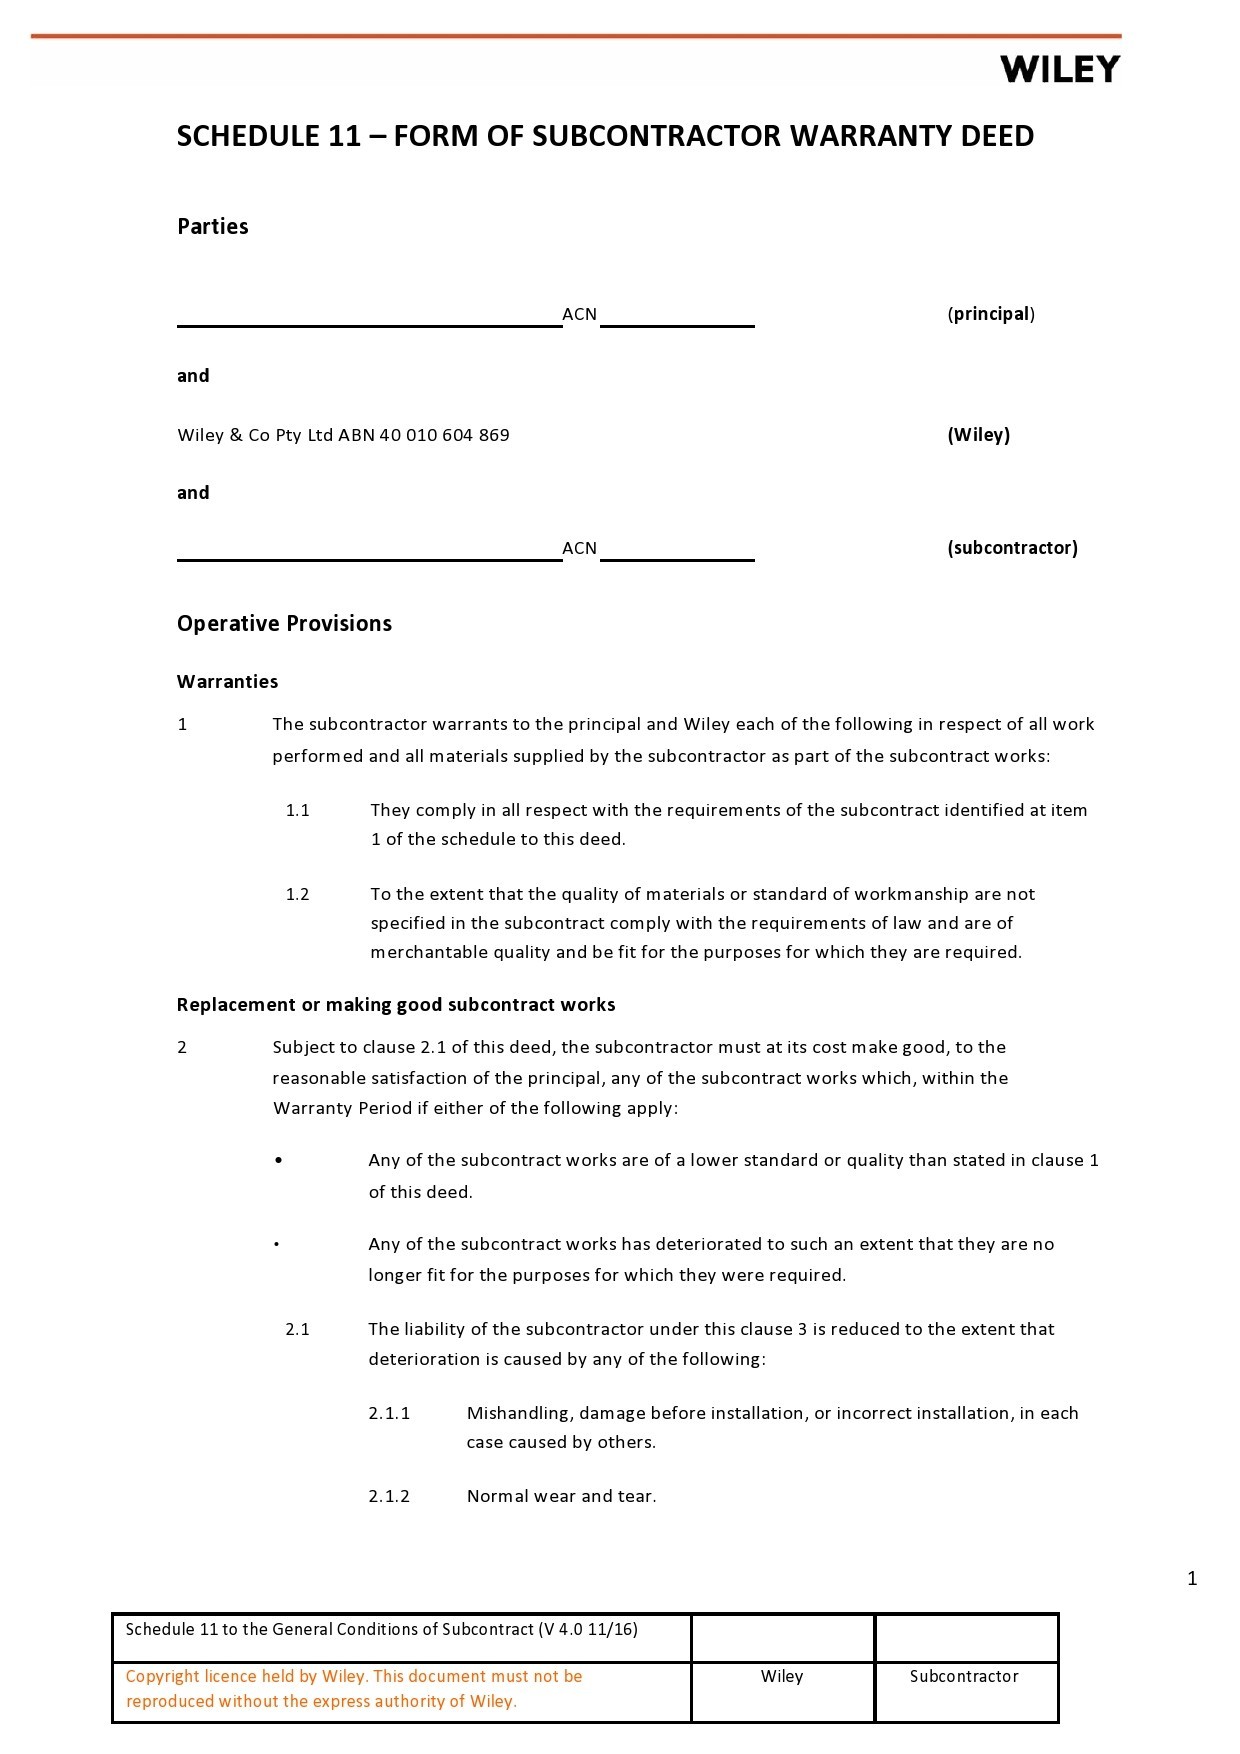 Free warranty deed form 10